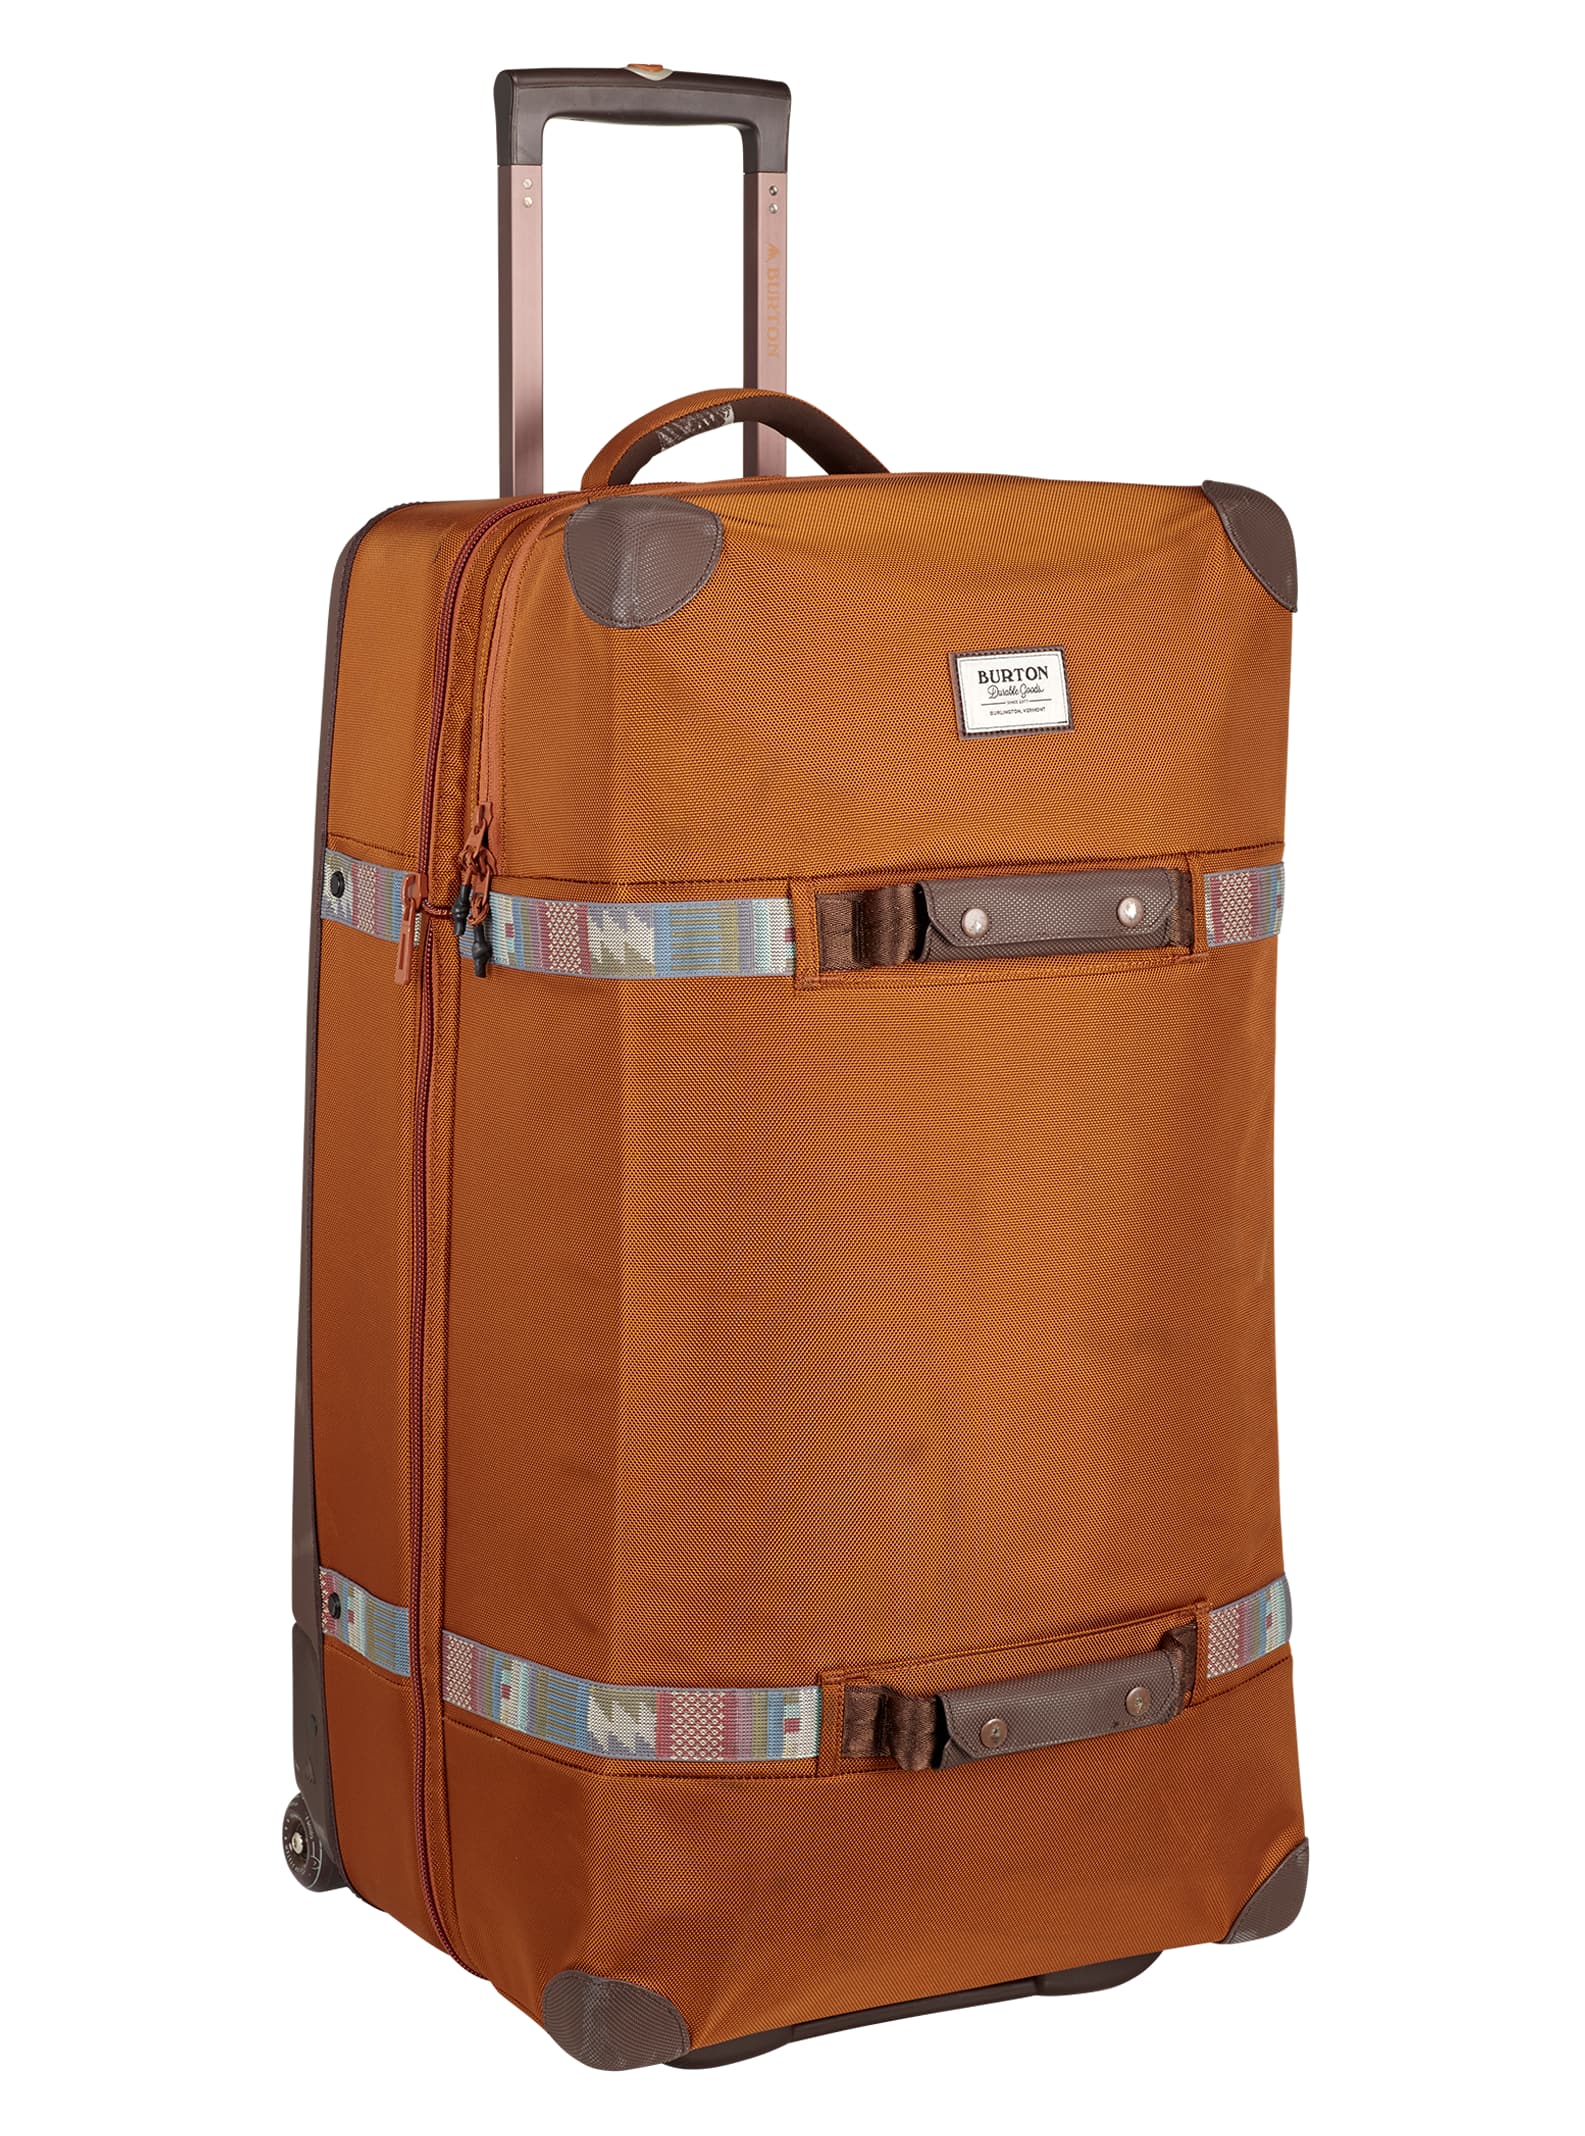 Burton / Wheelie Sub Travel Bag